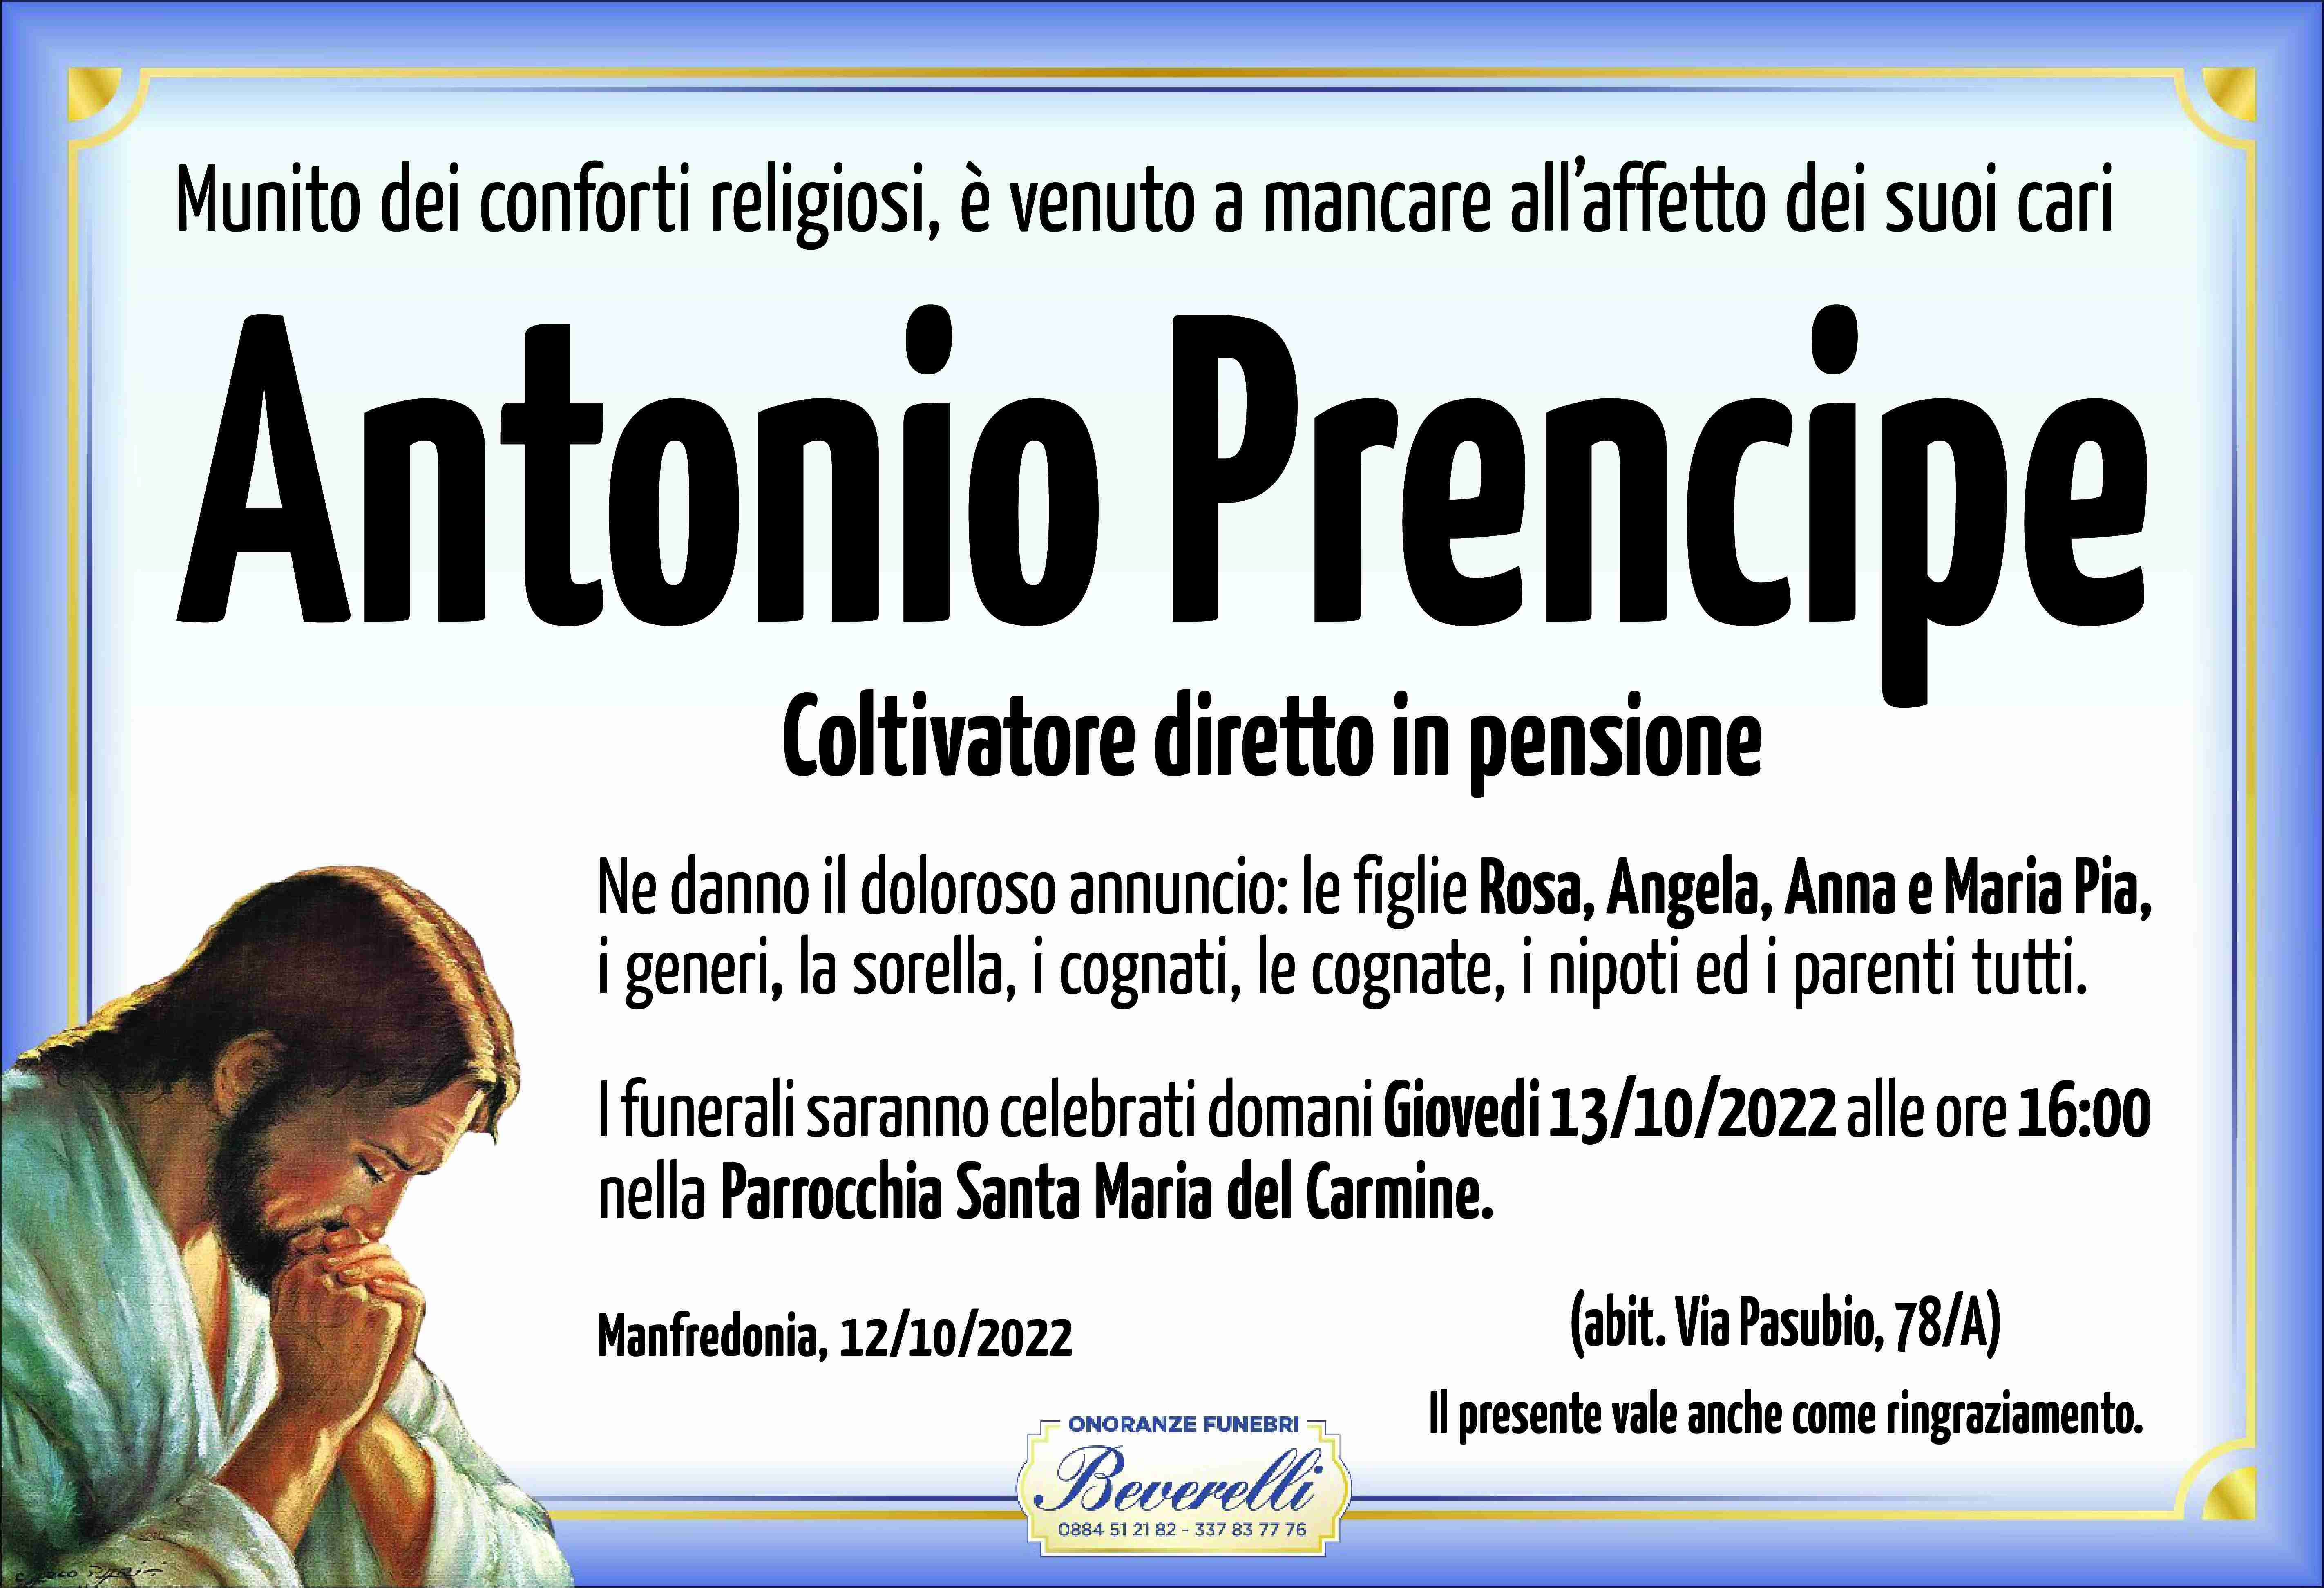 Antonio Prencipe